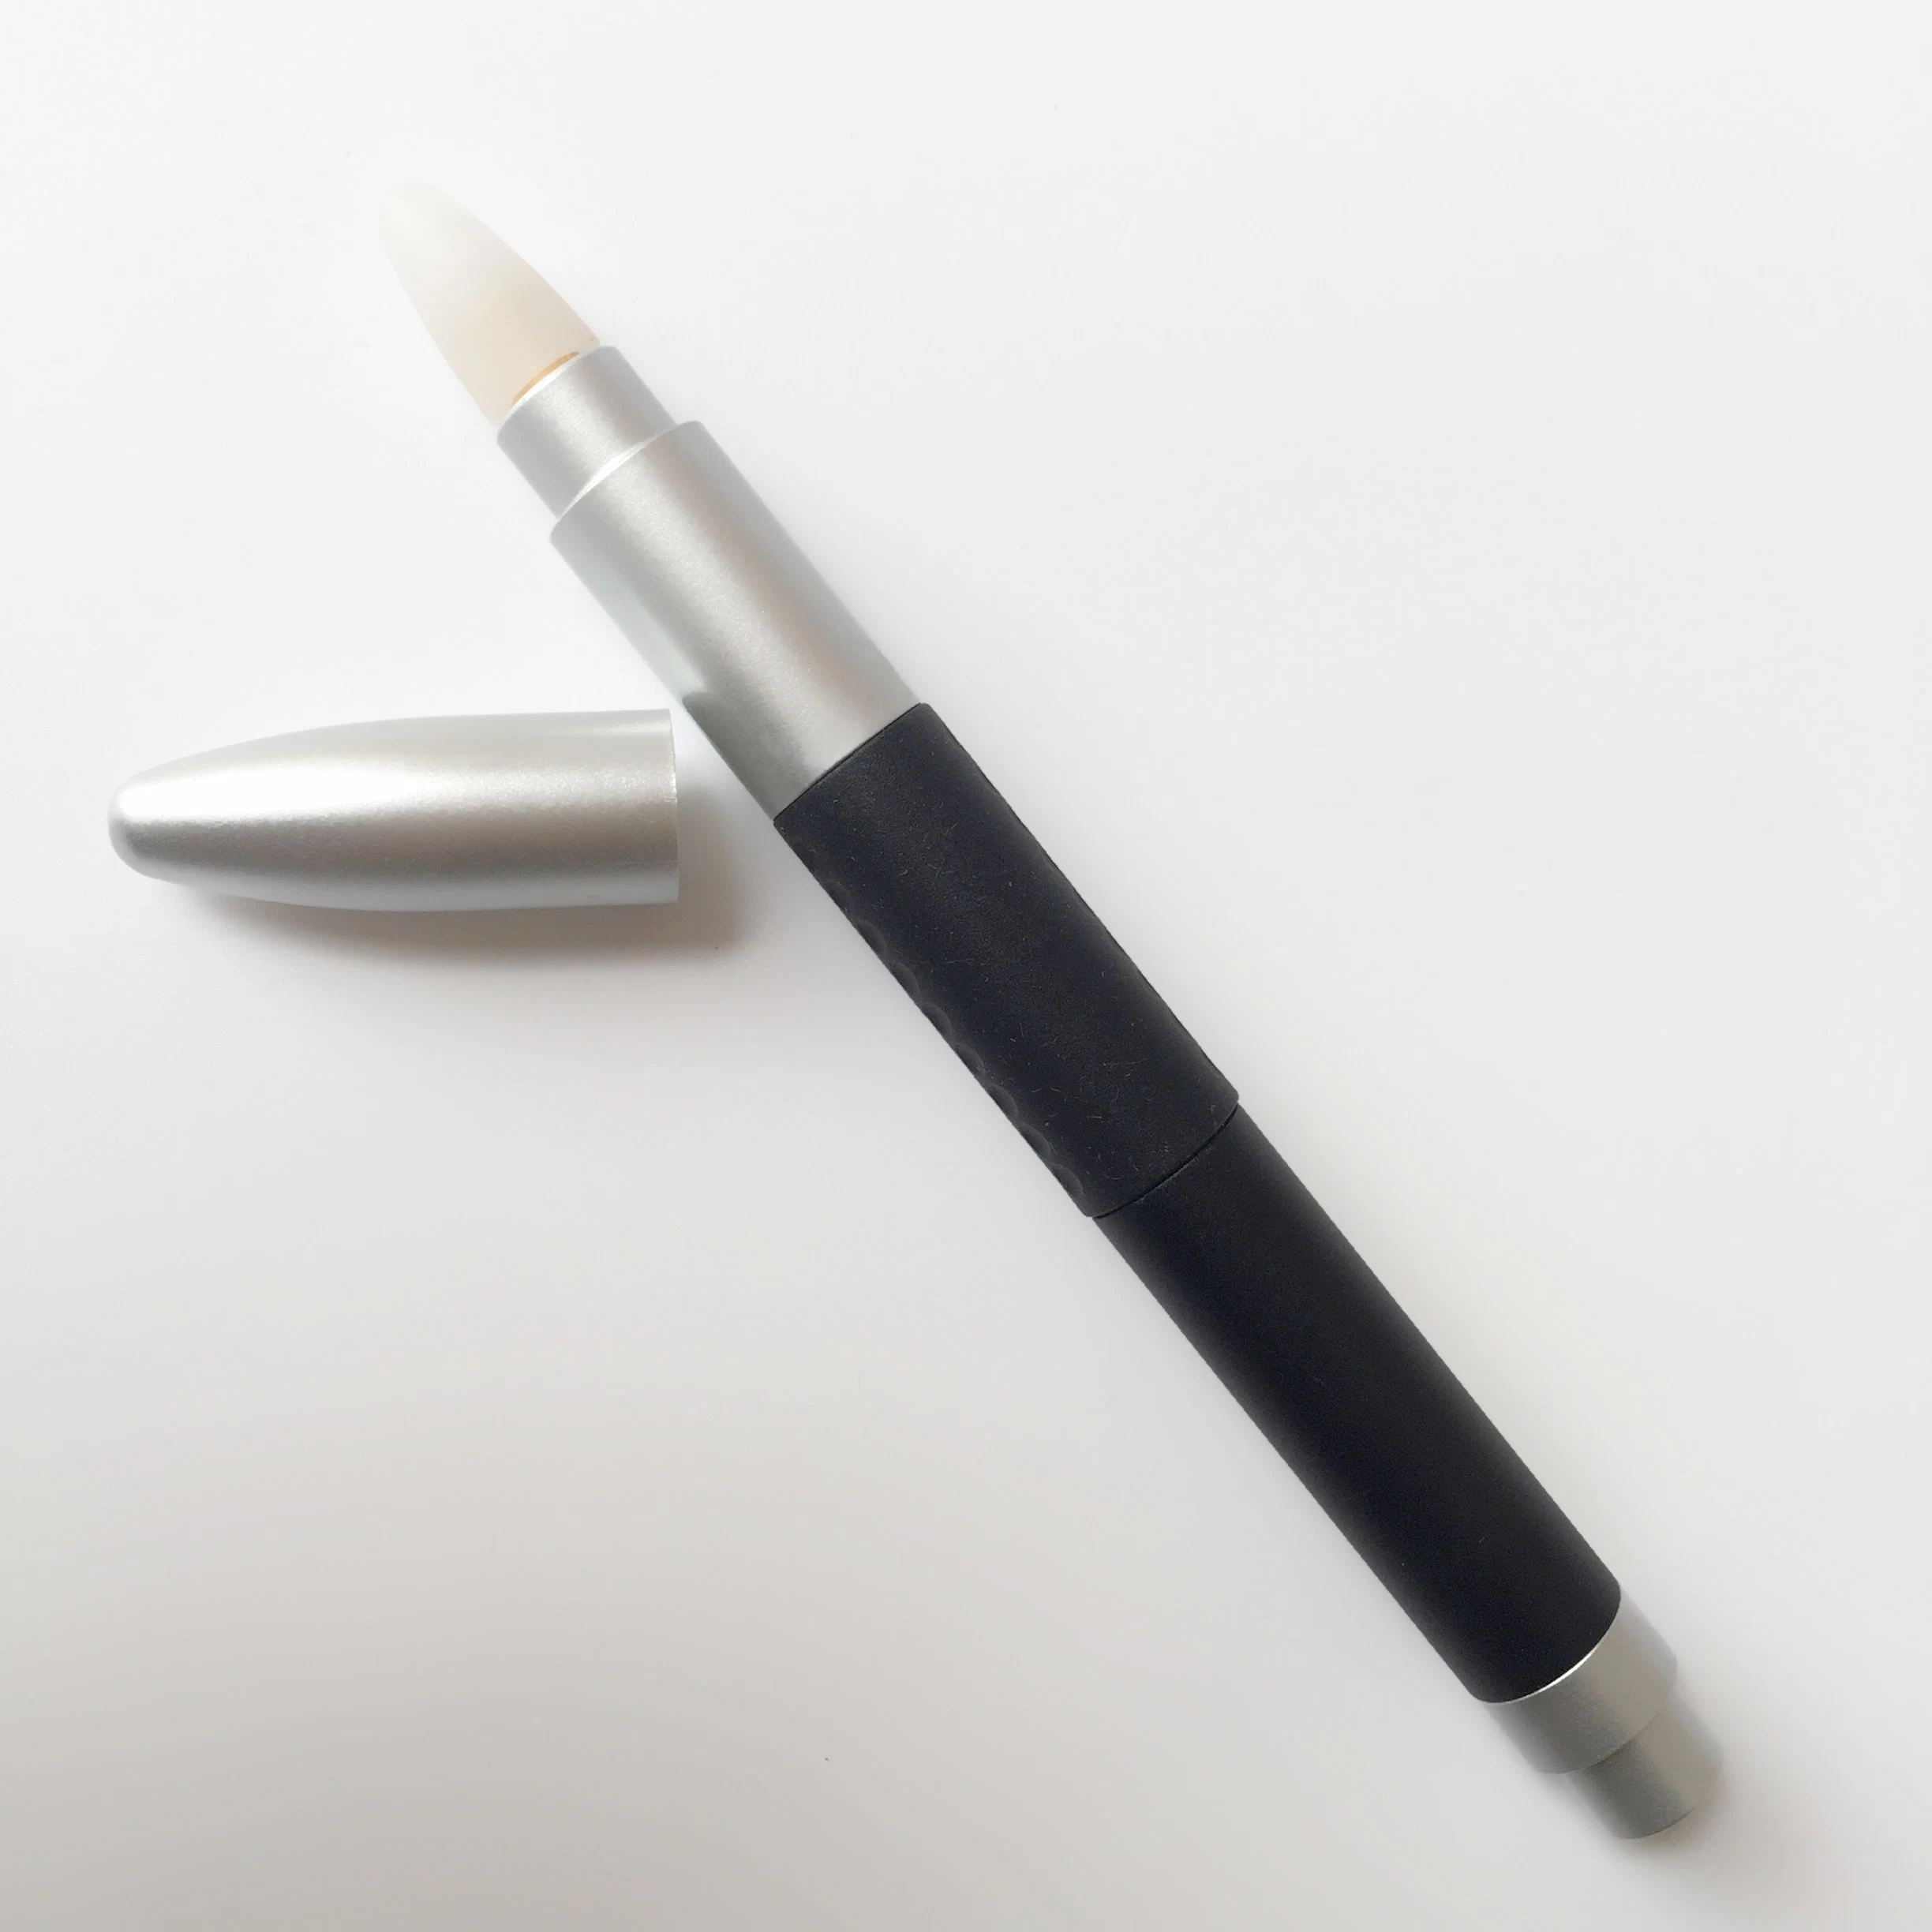 وصول جديد قلم الأشعة تحت الحمراء (P30) للوحات البيضاء التفاعلية و أجهزة العرض التفاعلية